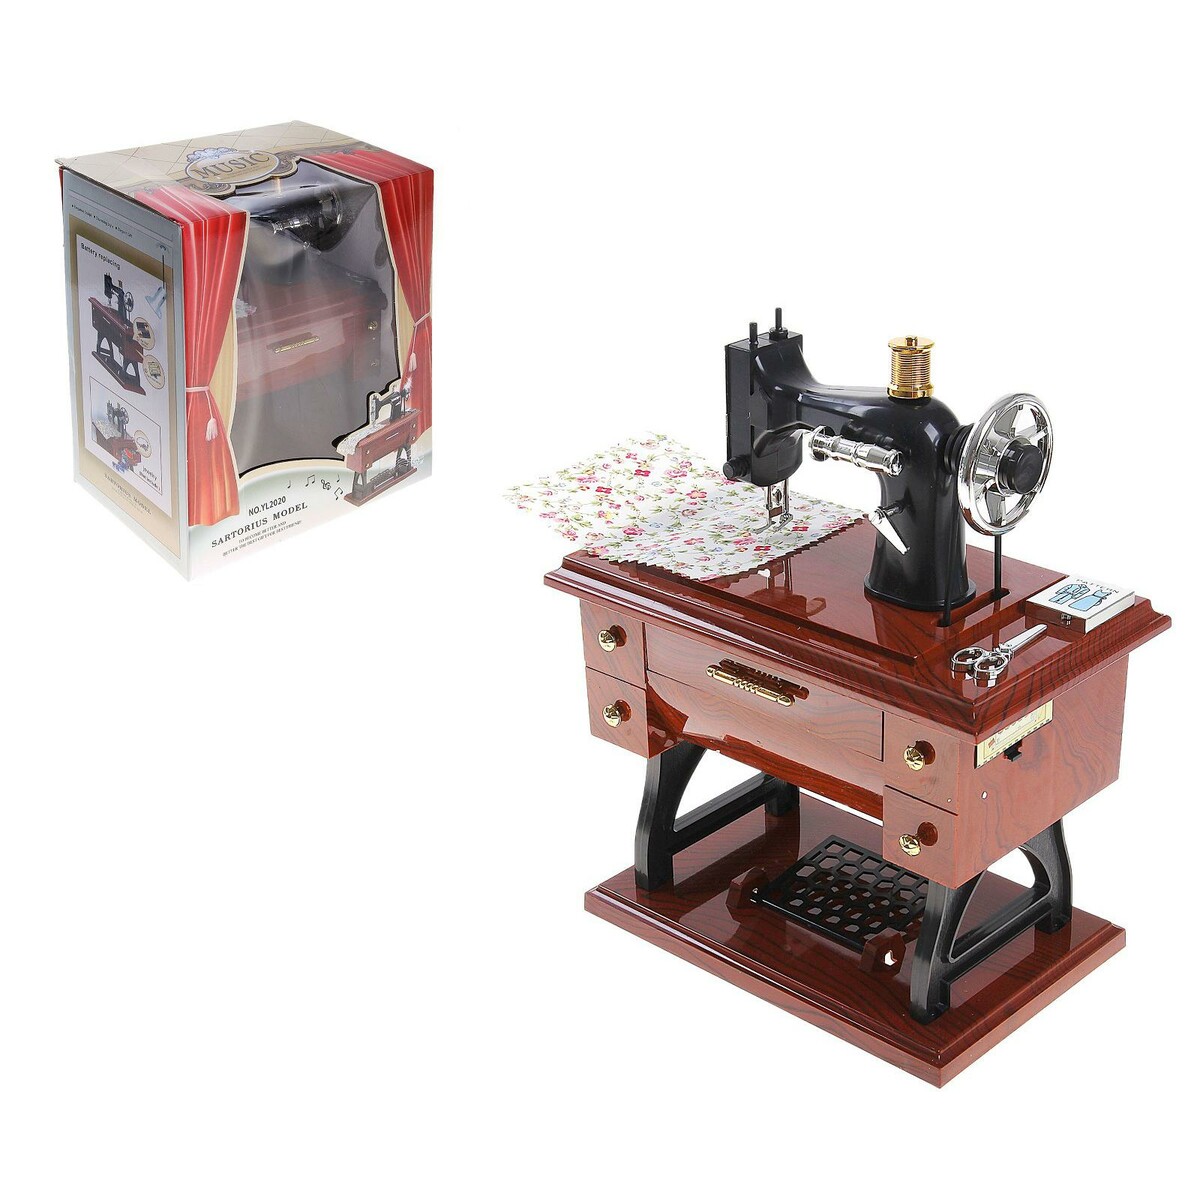 Машинка швейная шкатулка машинка для запаивания пакетов 10×4 см